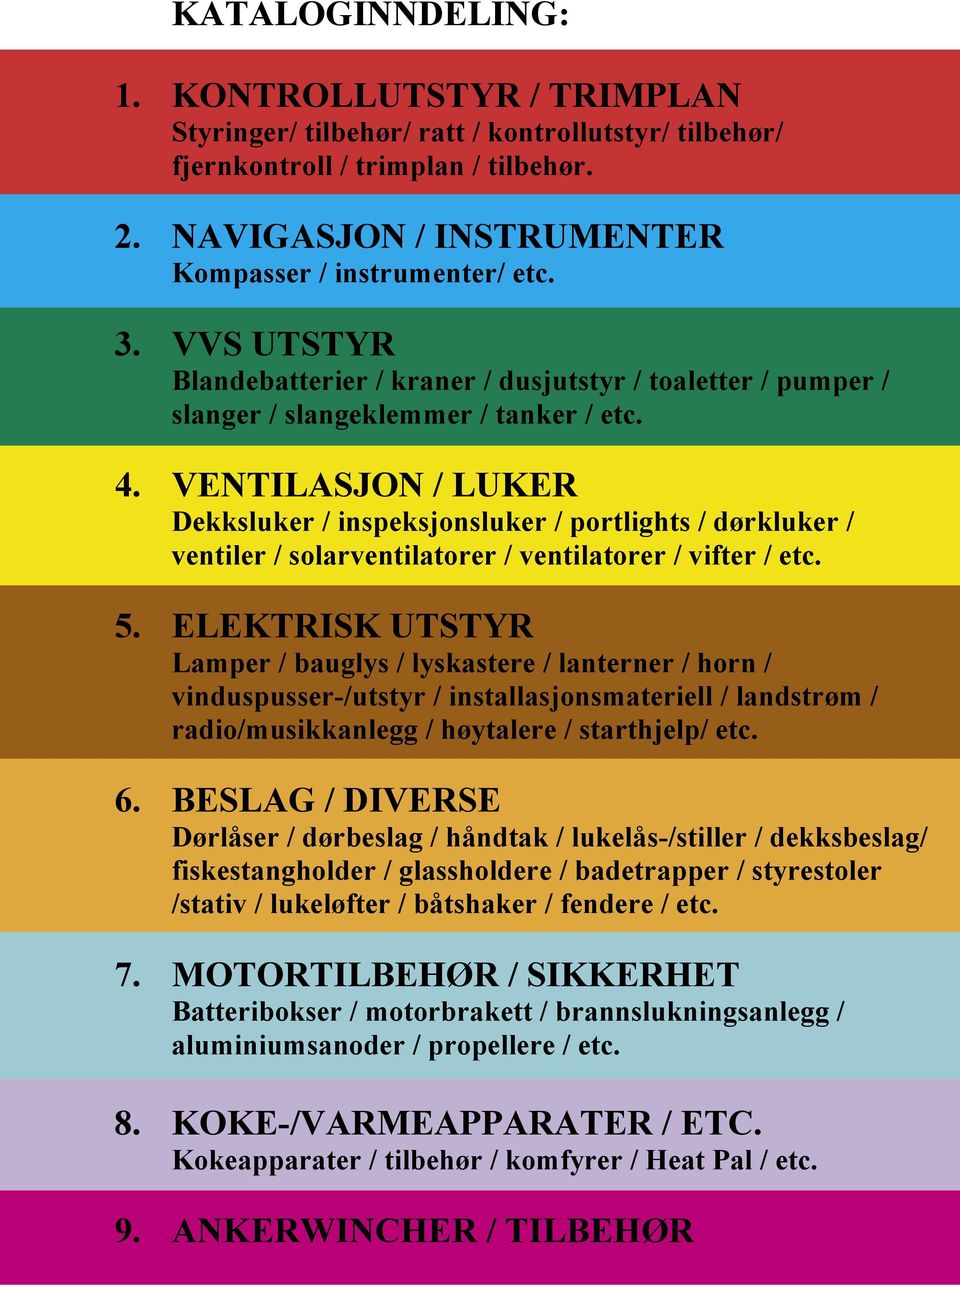 VENTILASJON / LUKER Dekksluker / inspeksjonsluker / portlights / dørkluker / ventiler / solarventilatorer / ventilatorer / vifter / etc. 5.